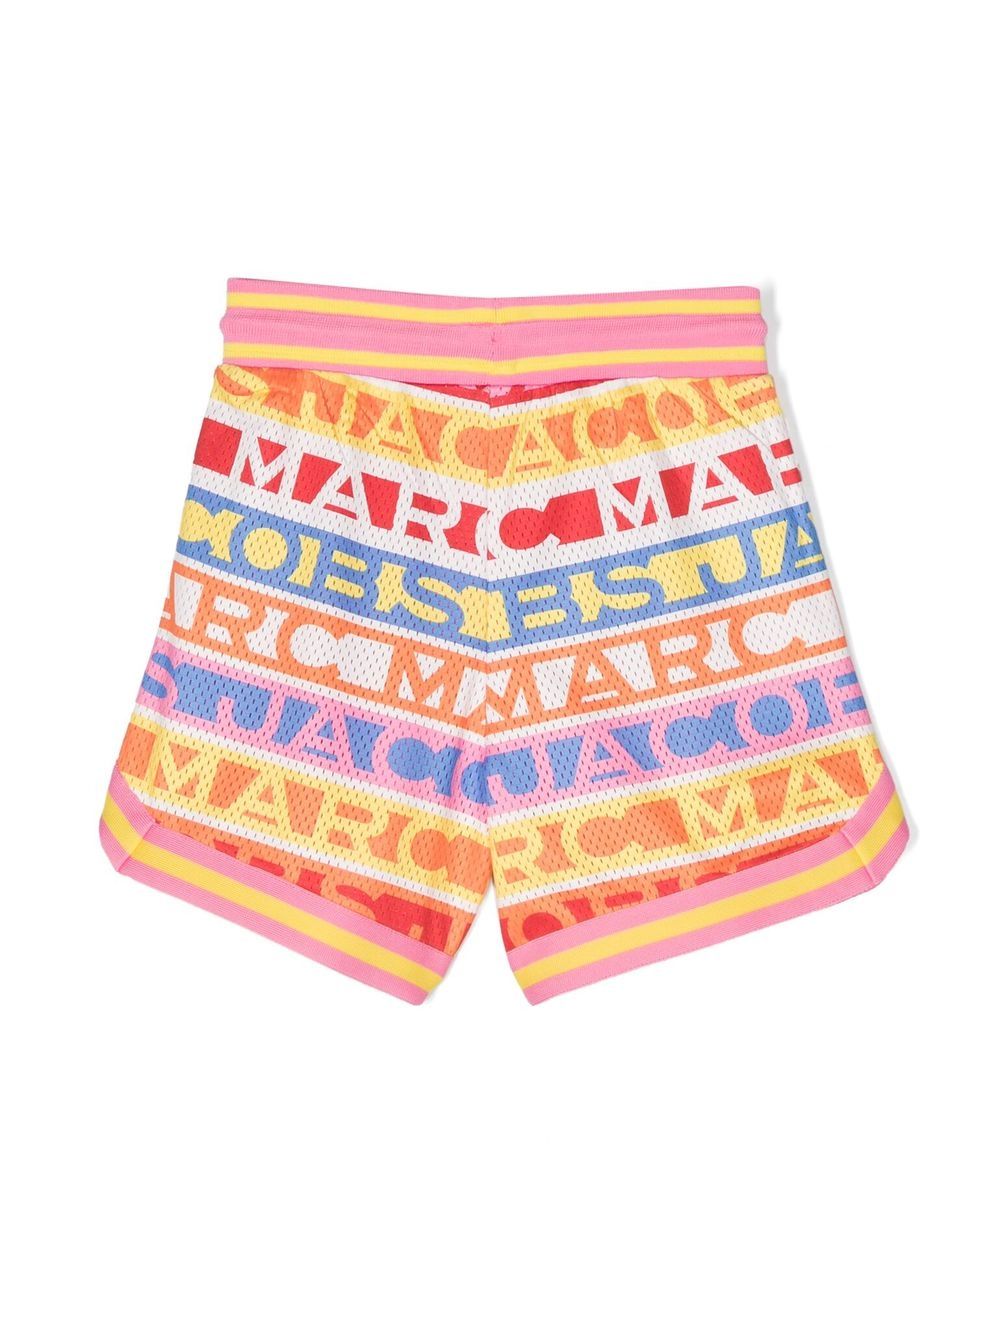 Image 2 of Marc Jacobs Kids shorts con franjas del logo y perforaciones